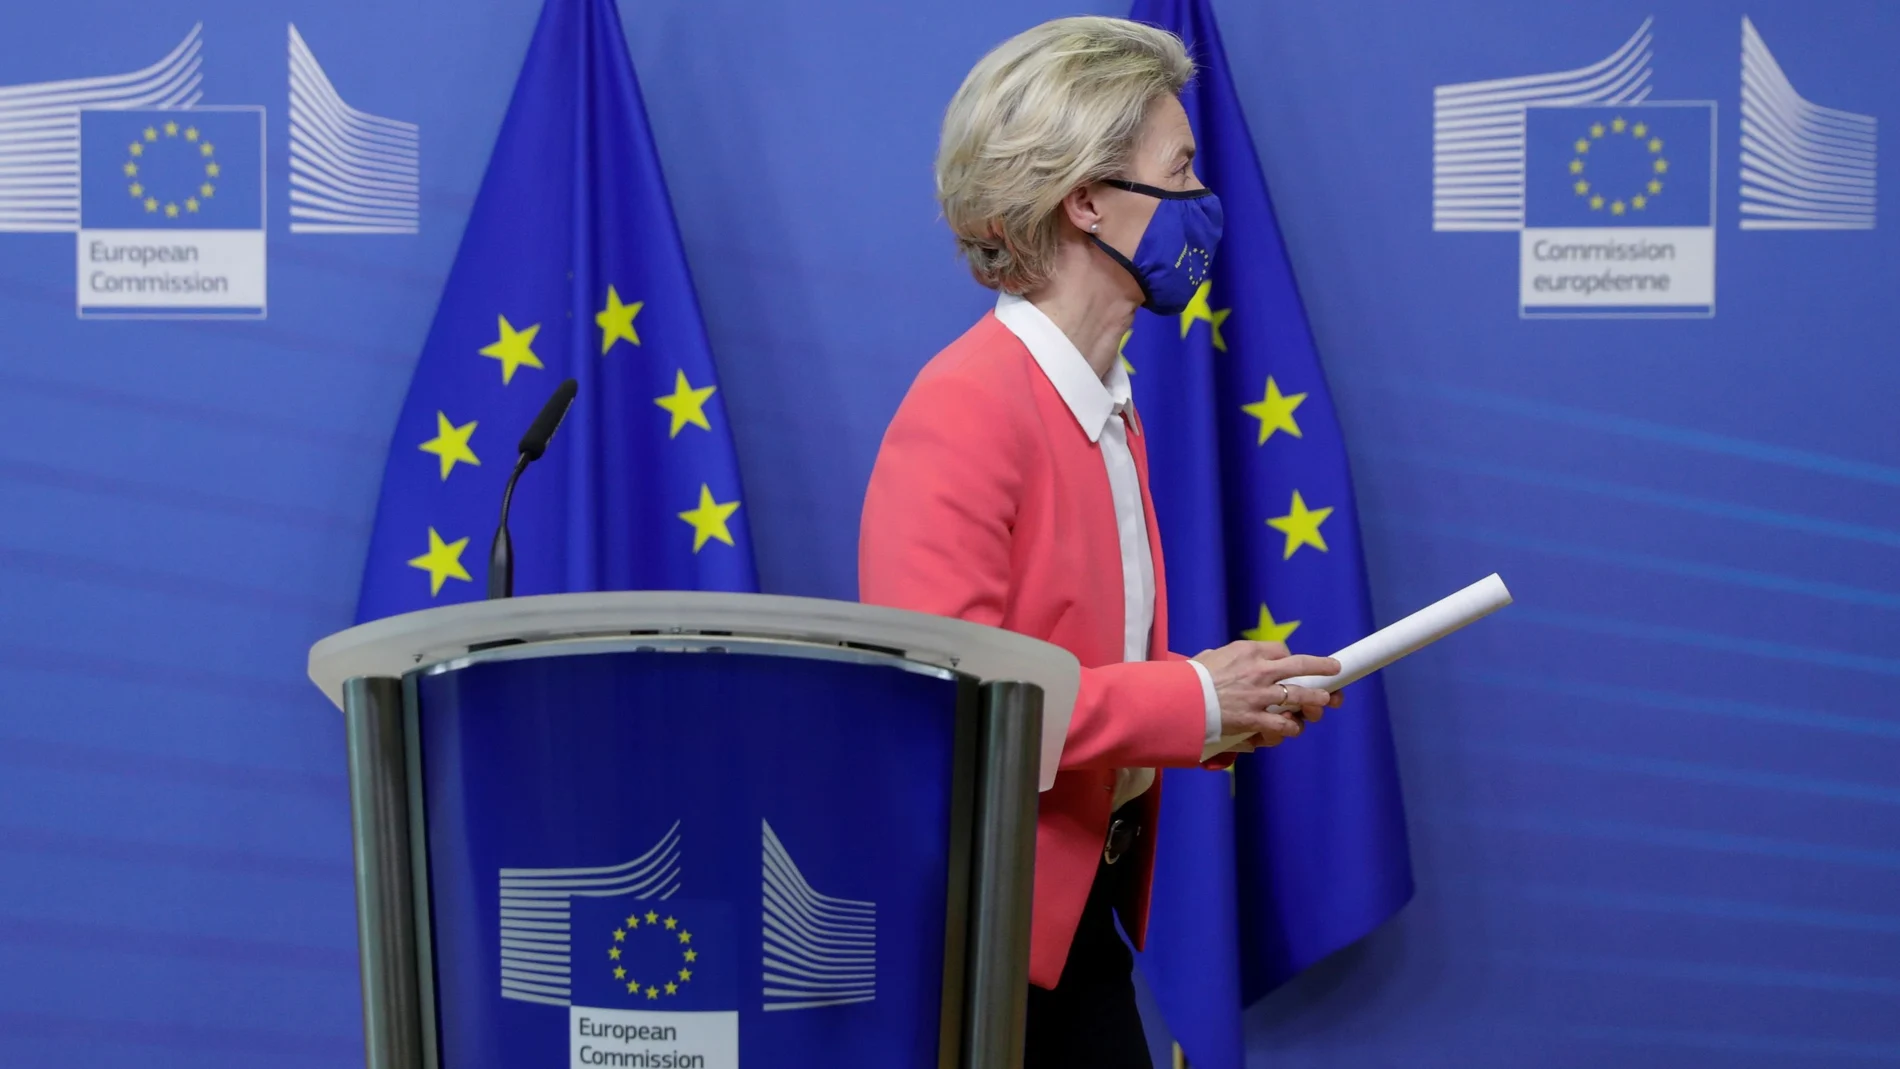 La presidenta de la Comisión Europea Ursula von der Leyen da una breve rueda de prensa tras hablar con el primer ministro británico